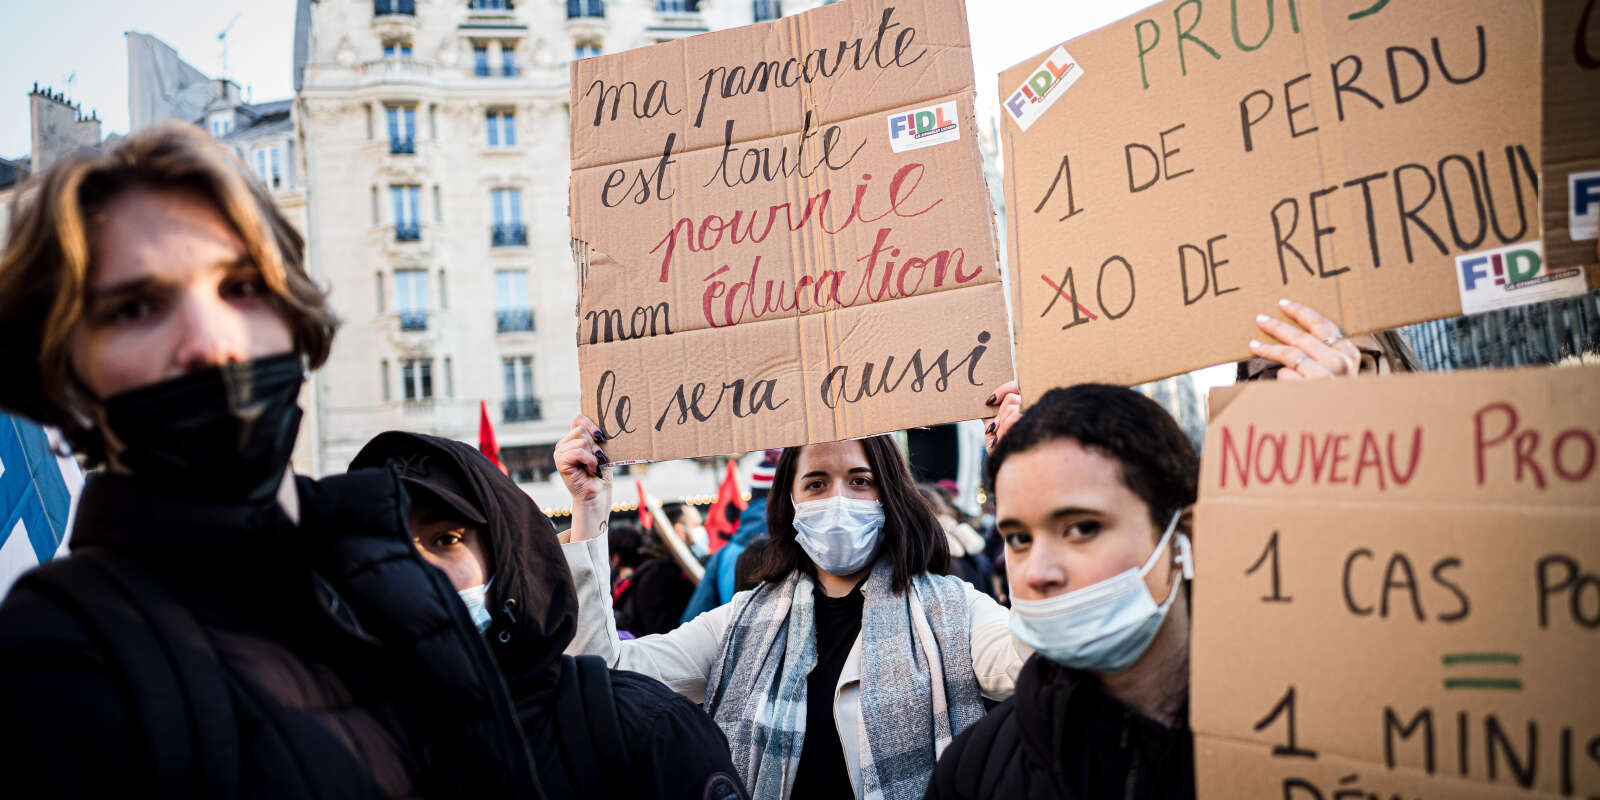 Paris, France le 13 janvier 2022 - Manifestation lors de la journee de greve dans l Education nationale. Une  manifestante au sein du cortege de la Fédération indépendante et démocratique lycéenne  (FIDL) tient une pancarte lisant 